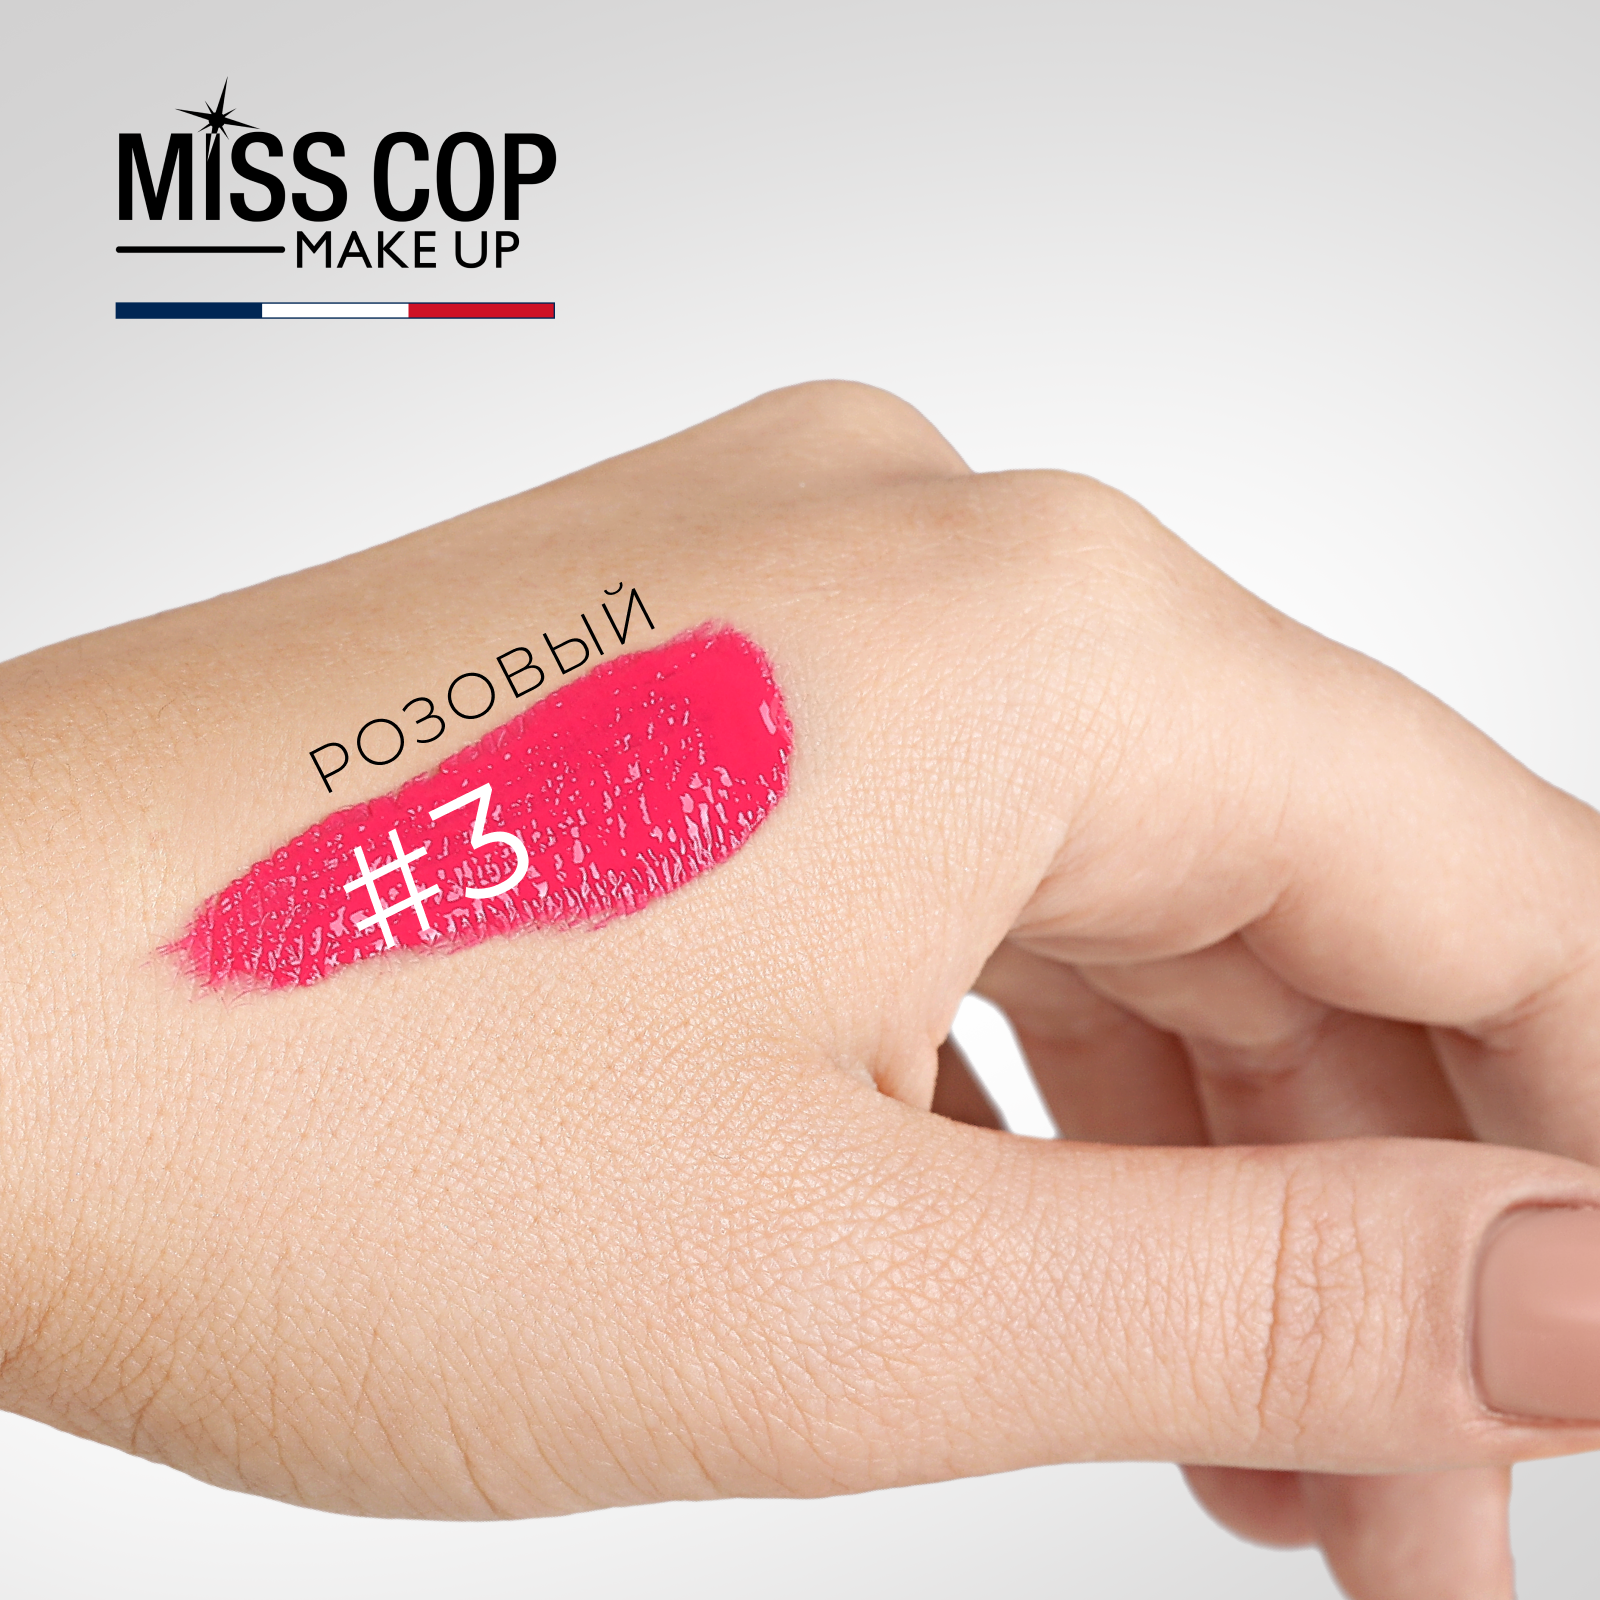 Жидкая губная помада Miss Cop матовая стойкая розовая Франция цвет 03 Pink 2 мл - фото 4